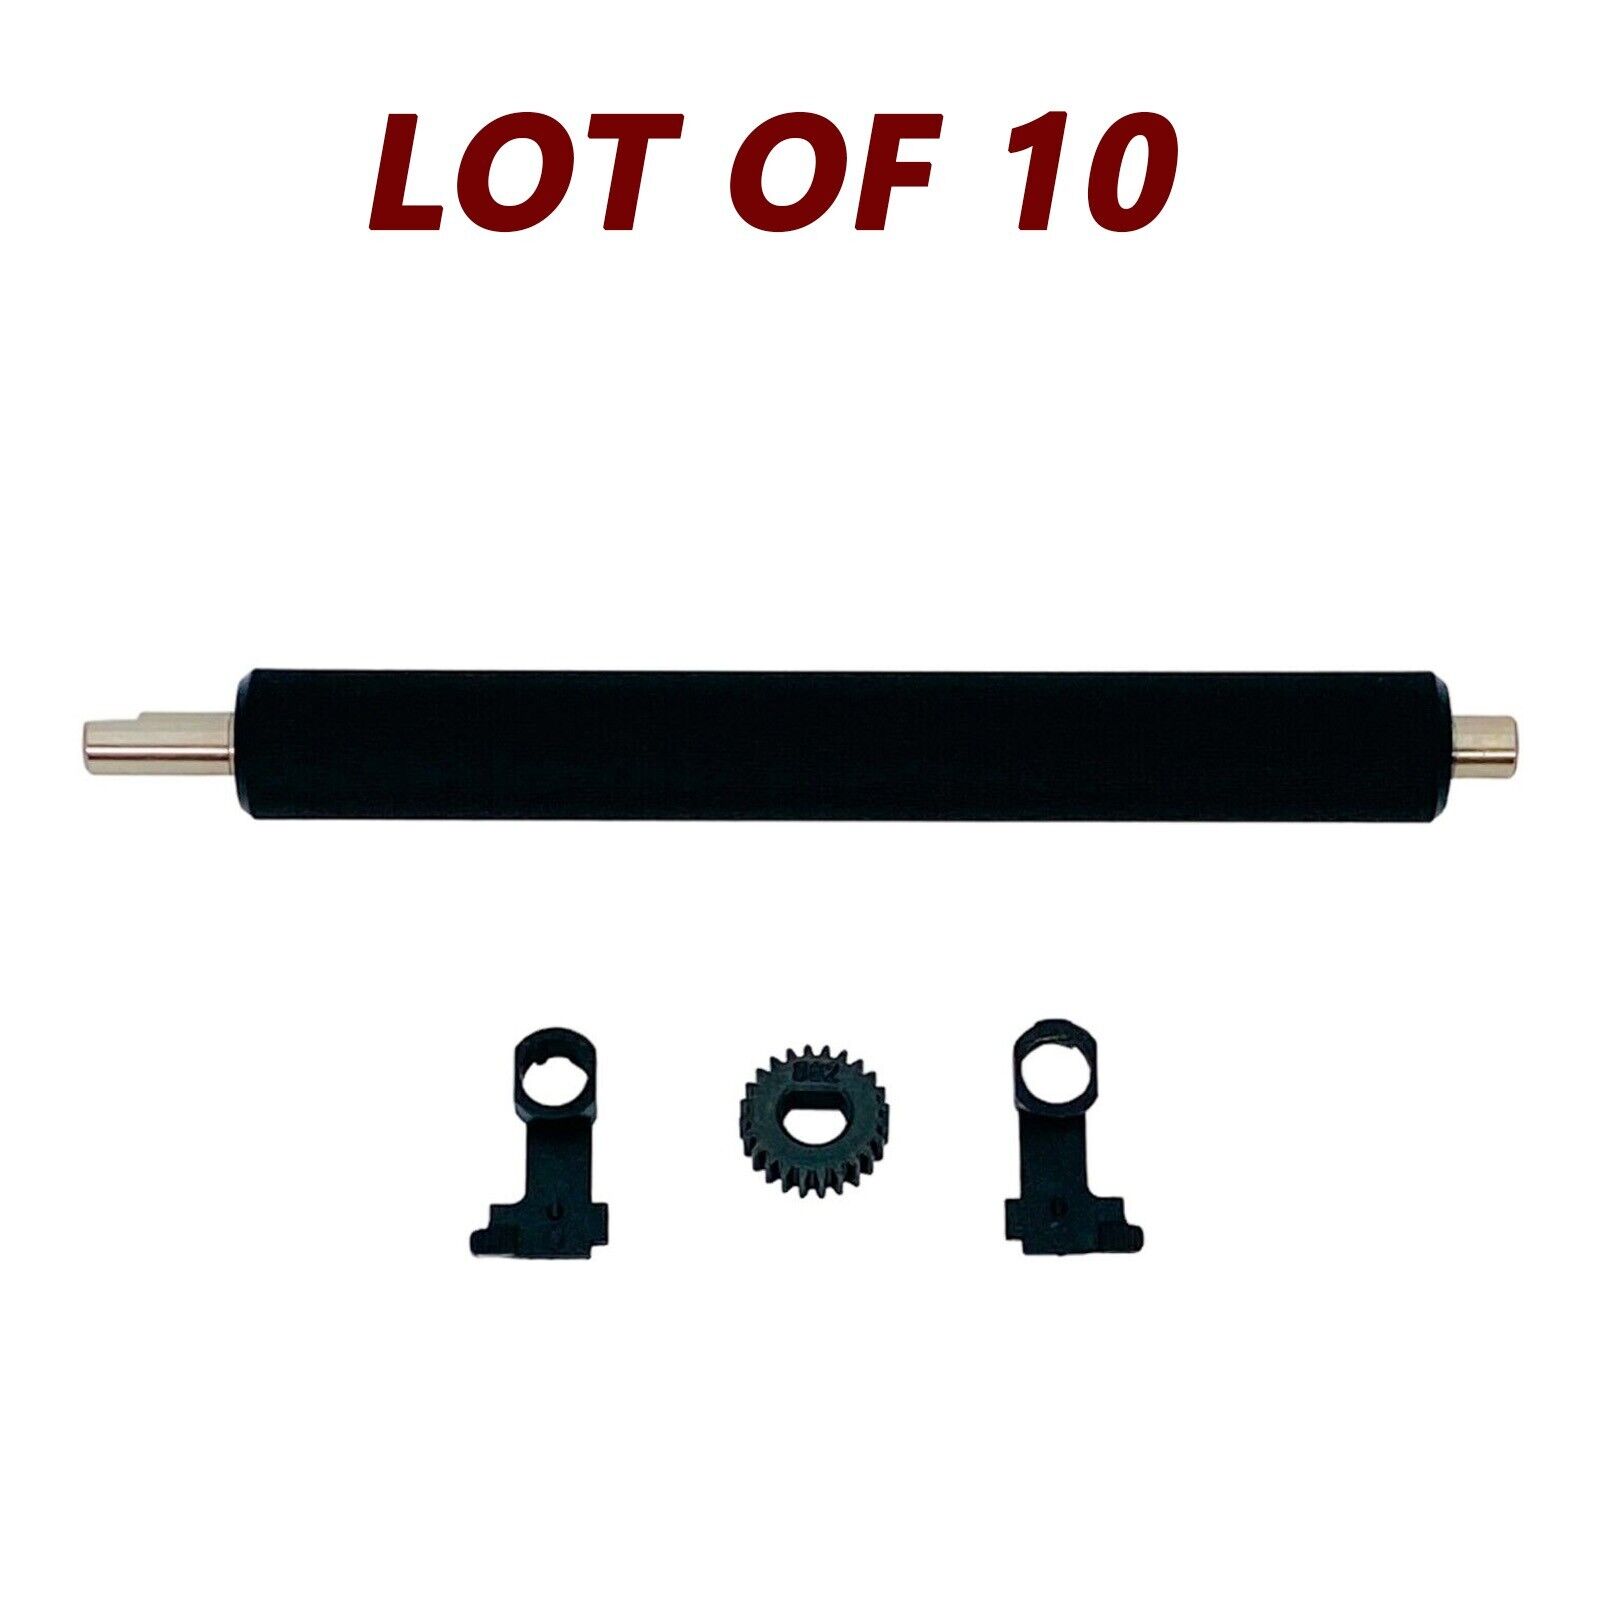 LOT of 10 Kit Platen Roller 105934-034 with Bearings for ZP450 ZP500 ZP505 ZP550